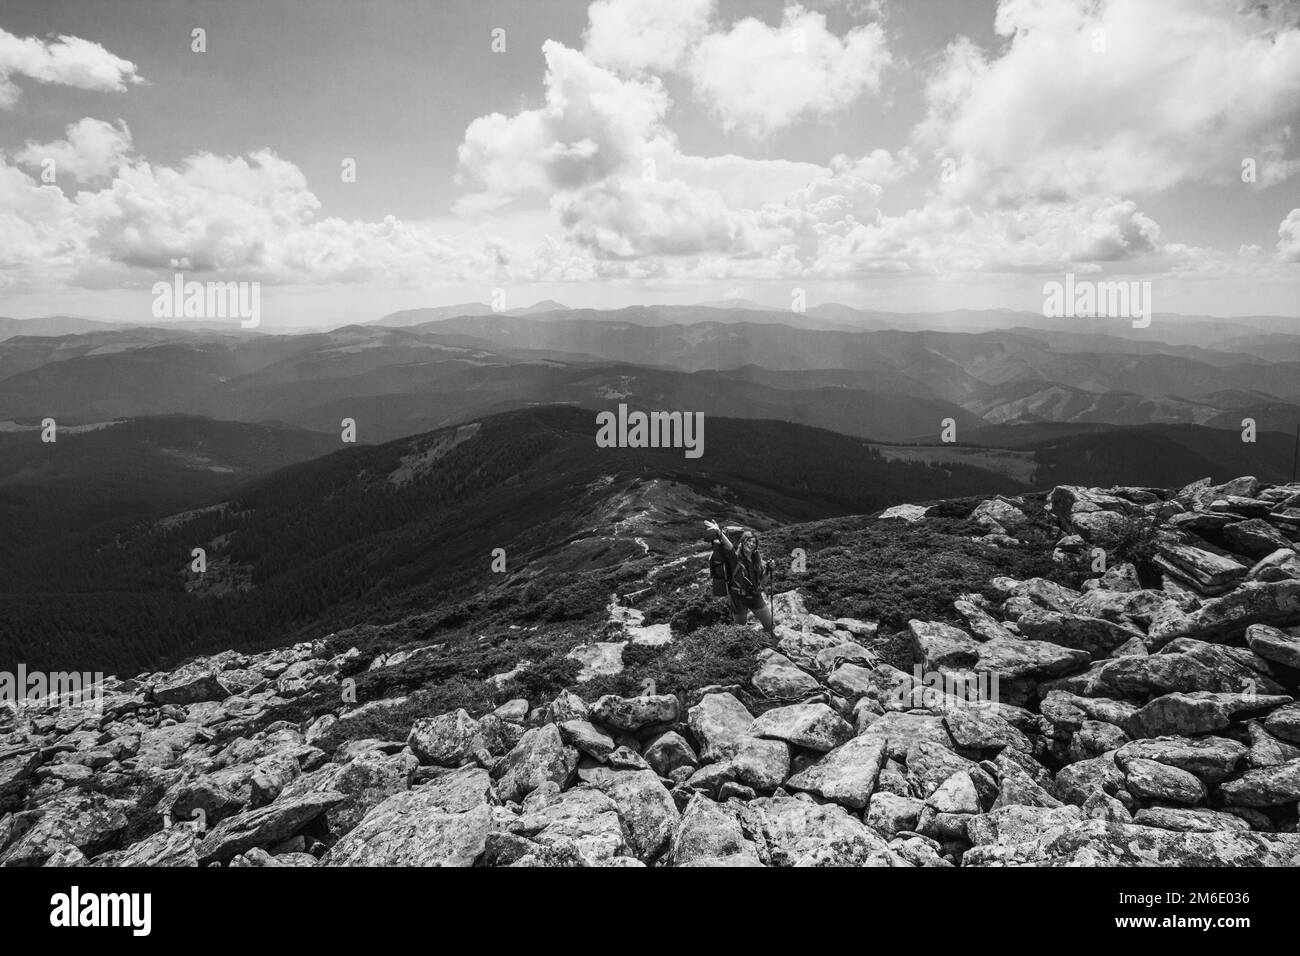 Tourisme sur montagne crête photo monochrome paysage Banque D'Images